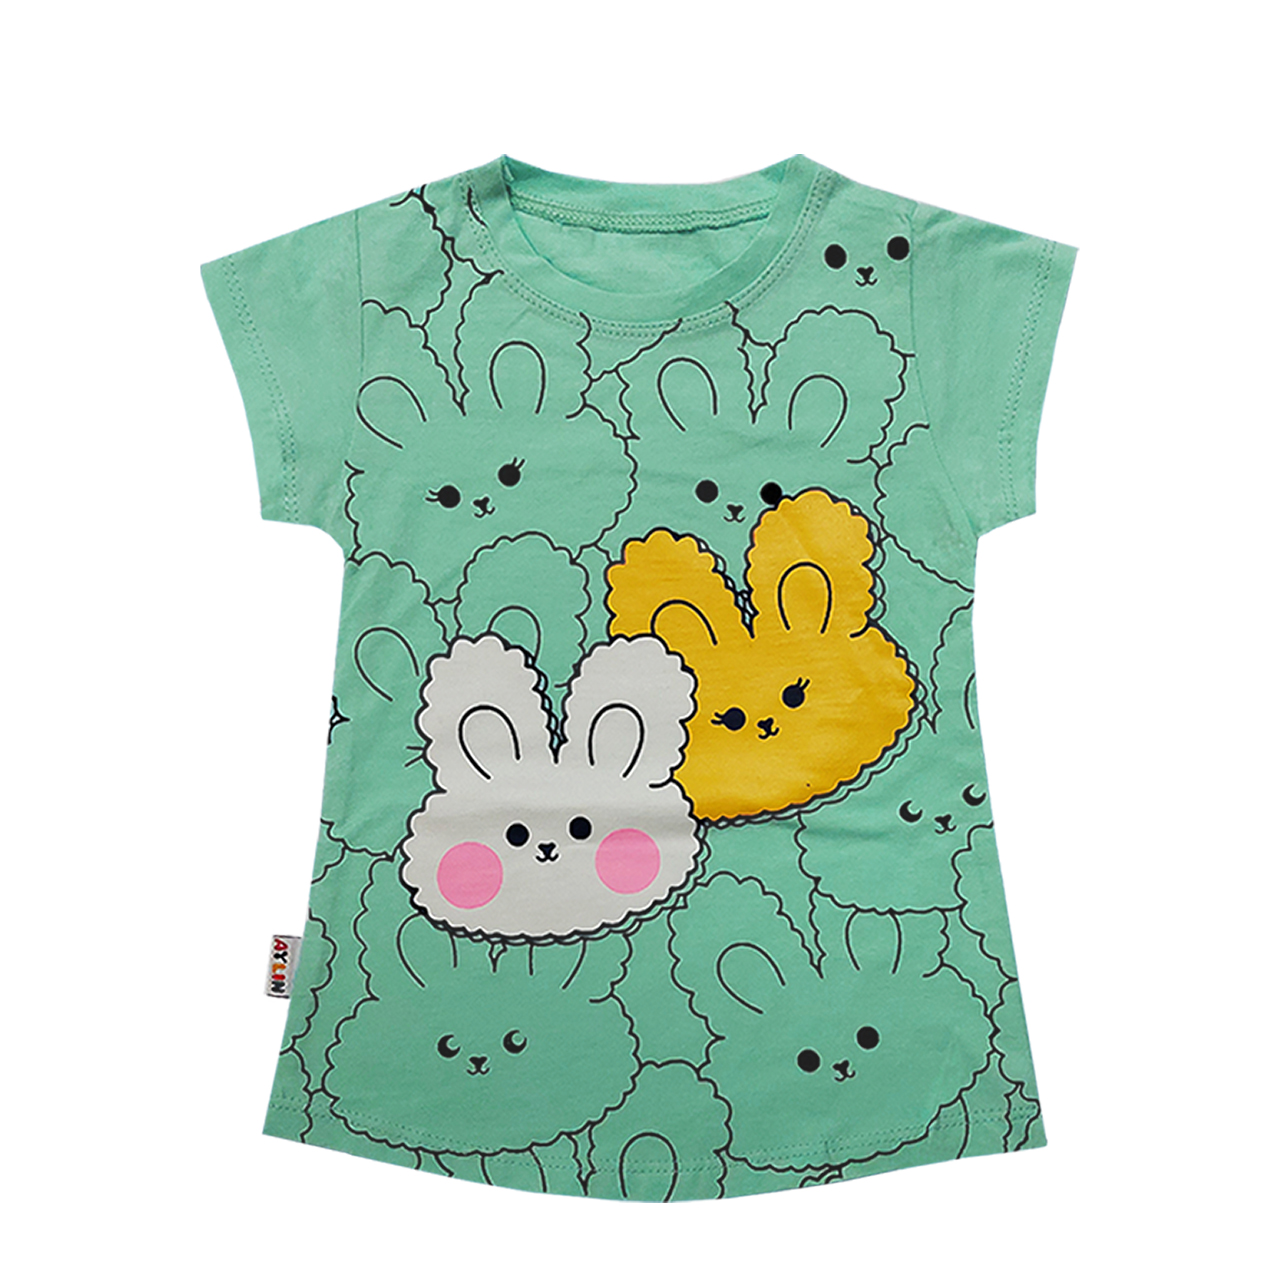 تی شرت آستین کوتاه دخترانه آیلین طرح خرگوش کد 150011